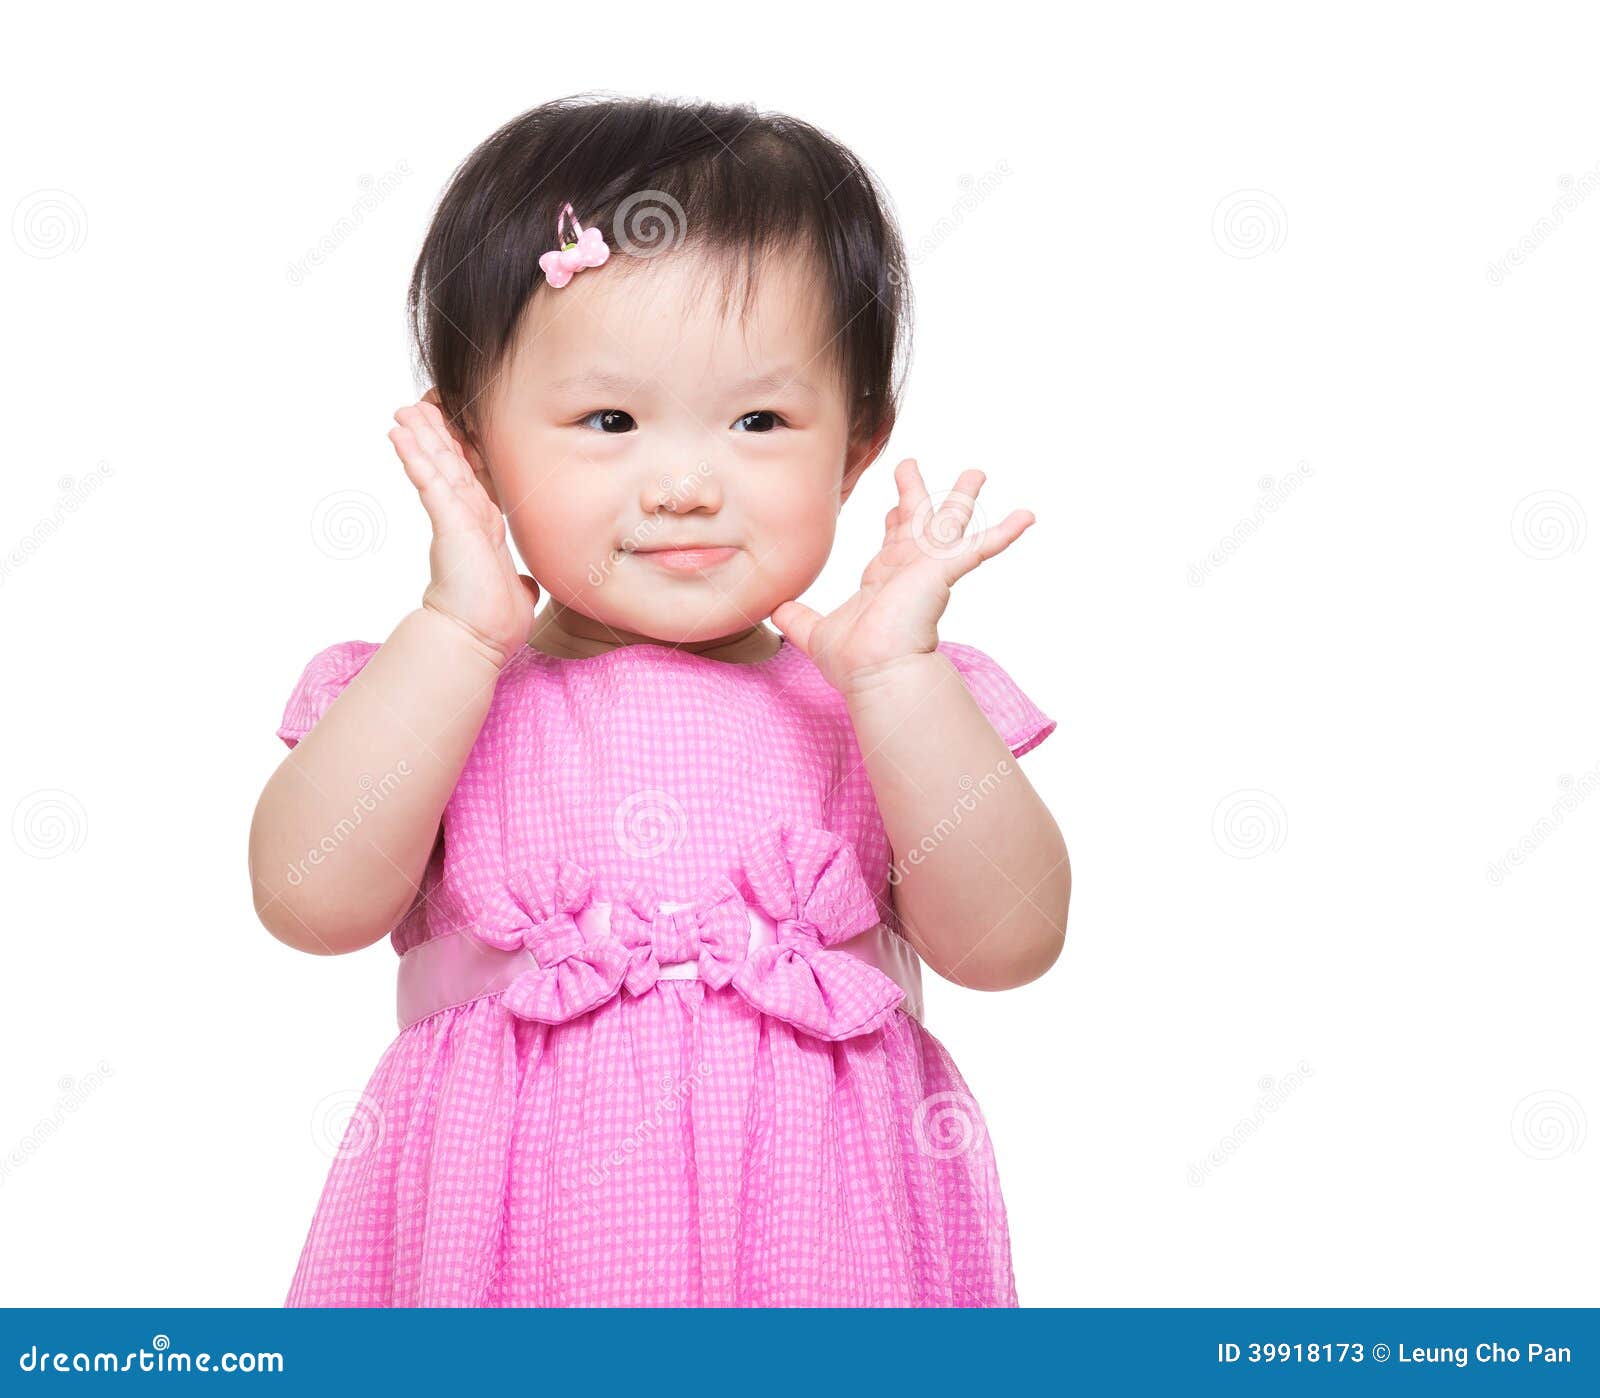 фото маленькой девочки азиатки фото 110